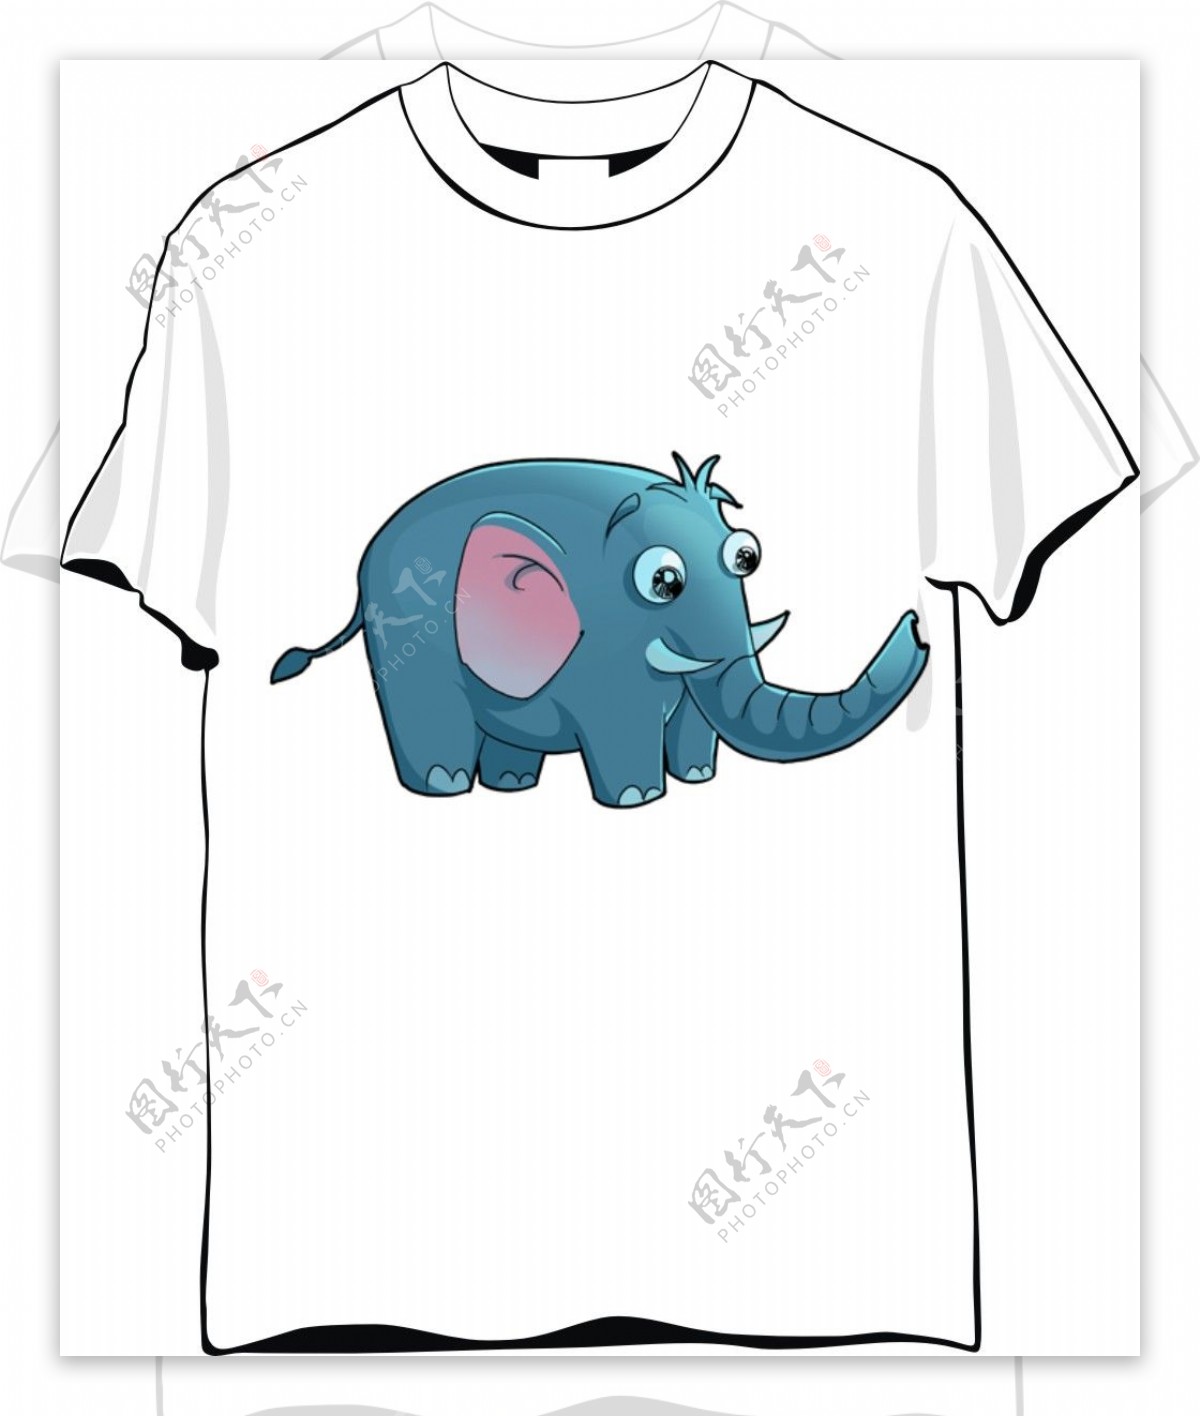 大象可爱T恤